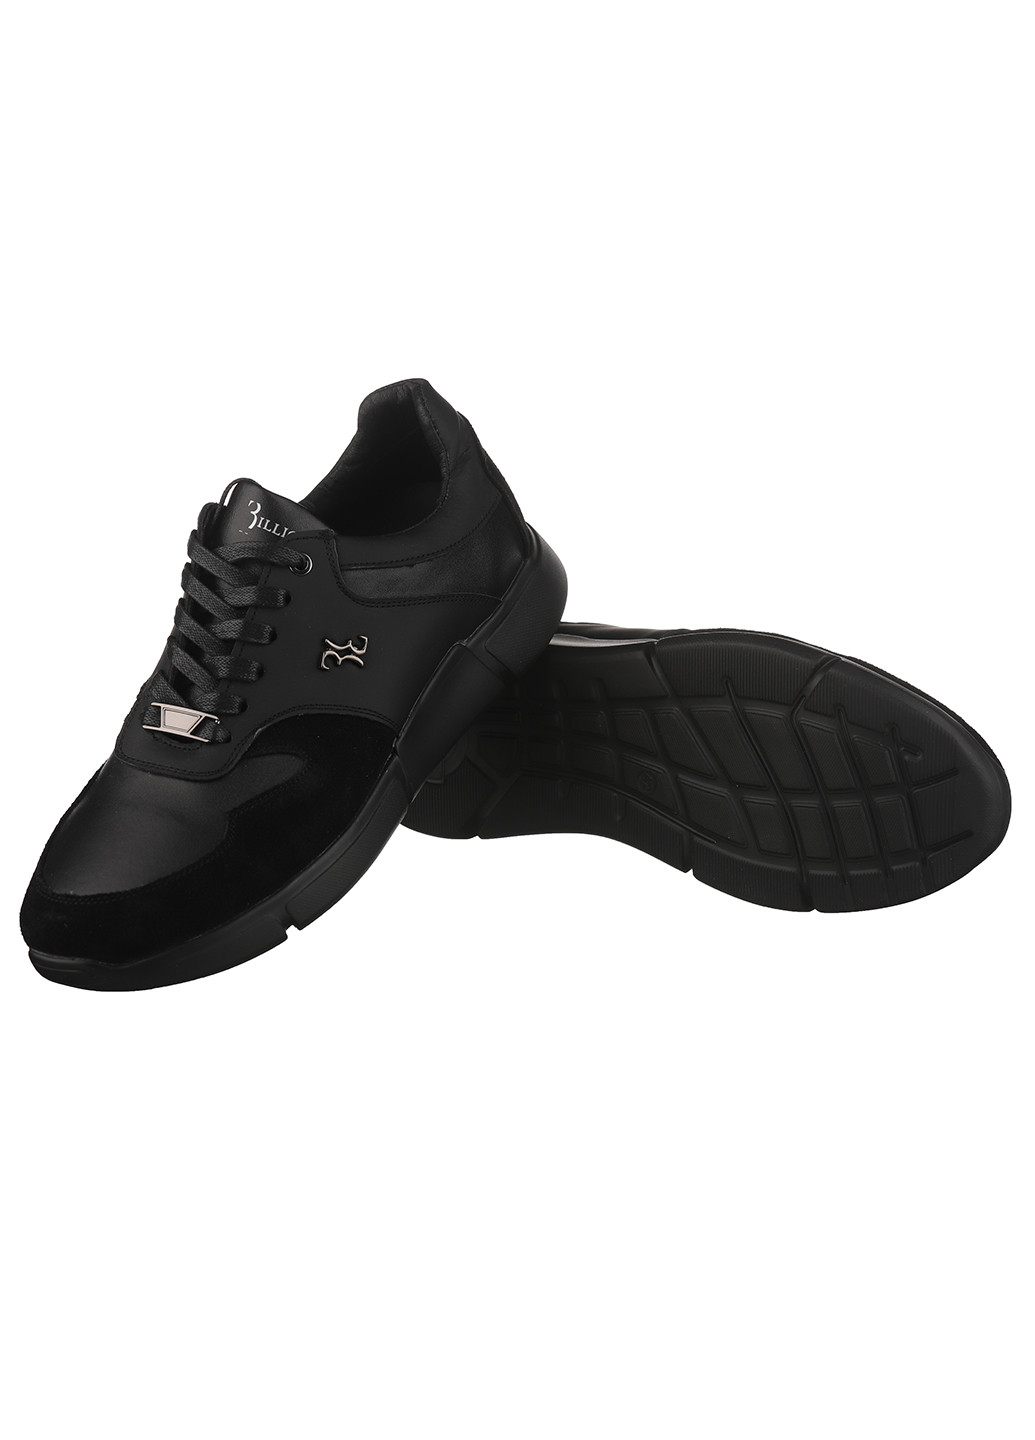 Черные демисезонные кроссовки m-137 Trendy